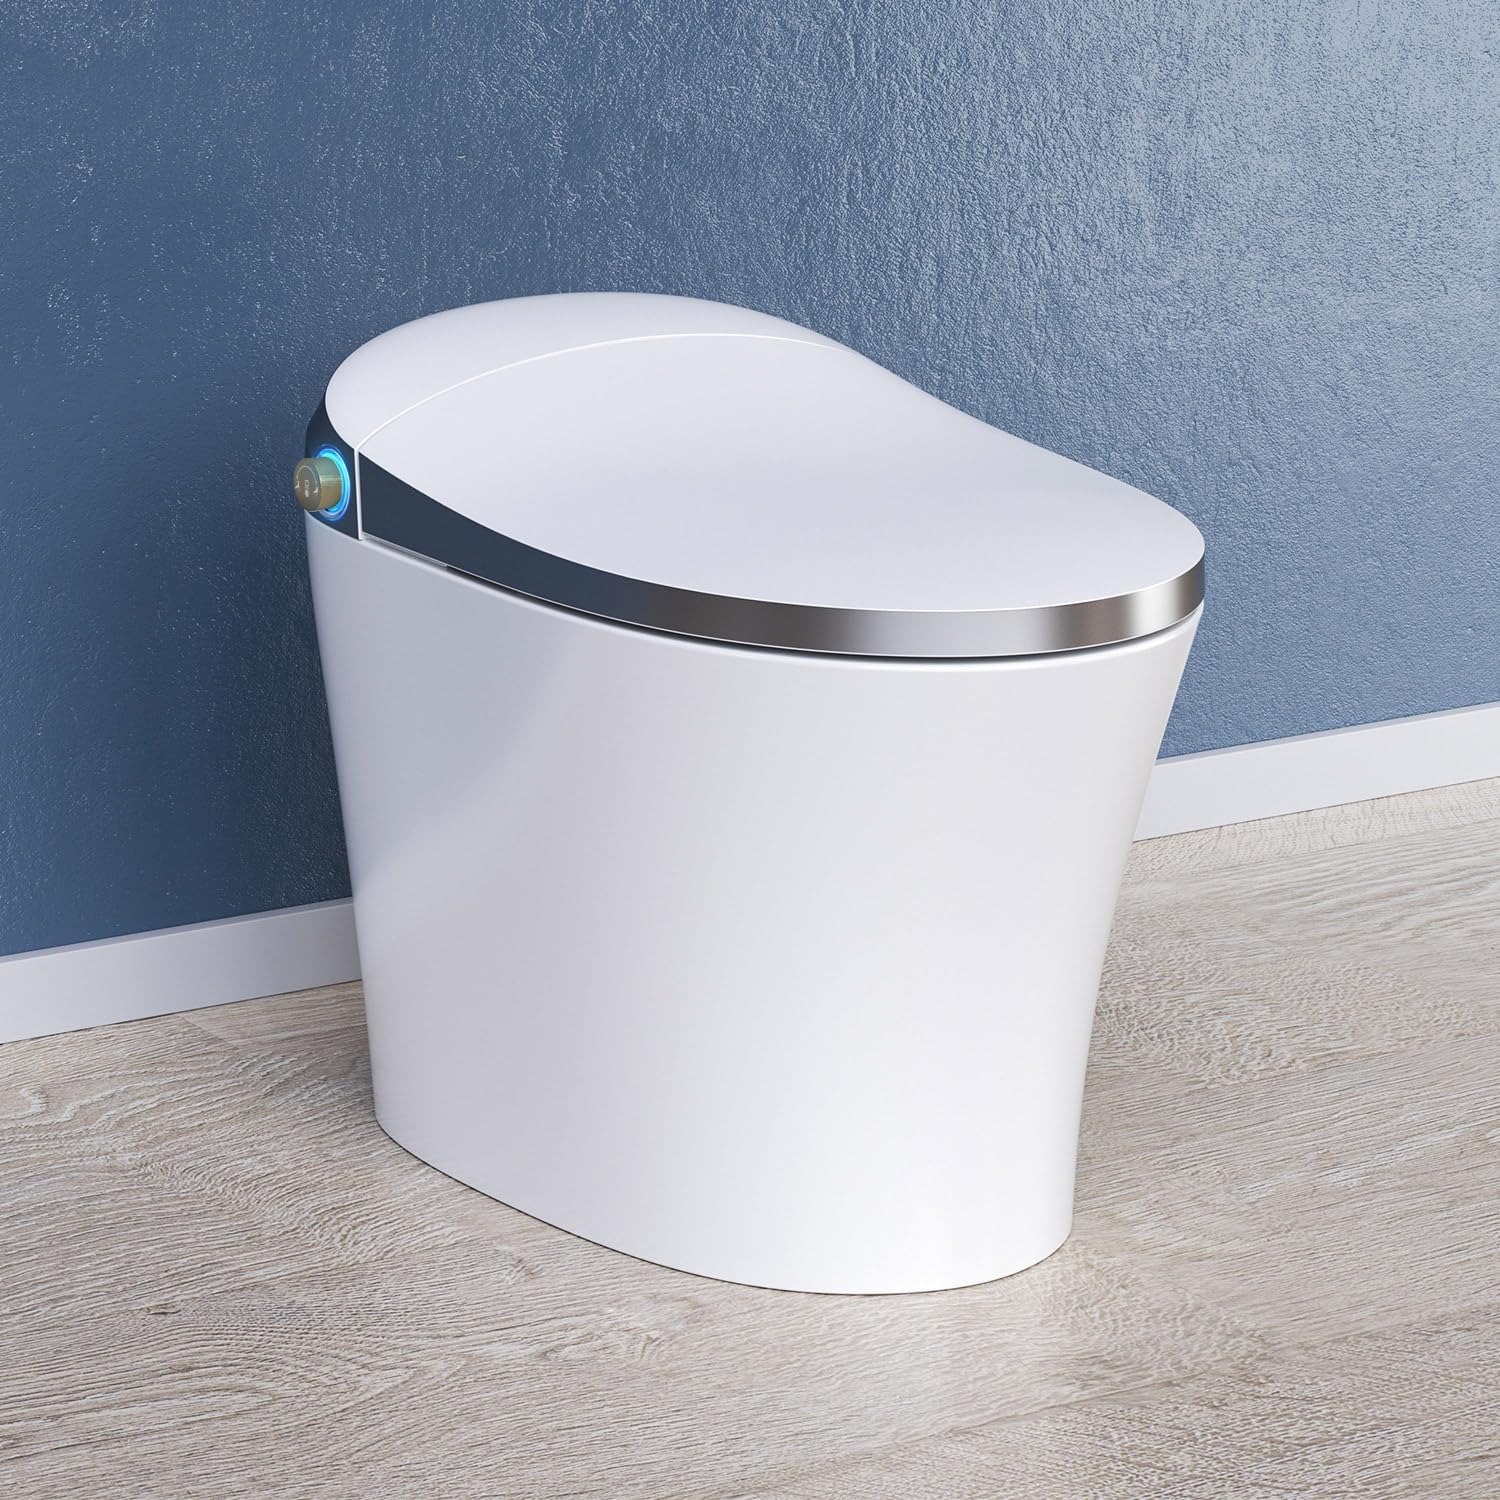 HOROW Luxury Smart Toilet